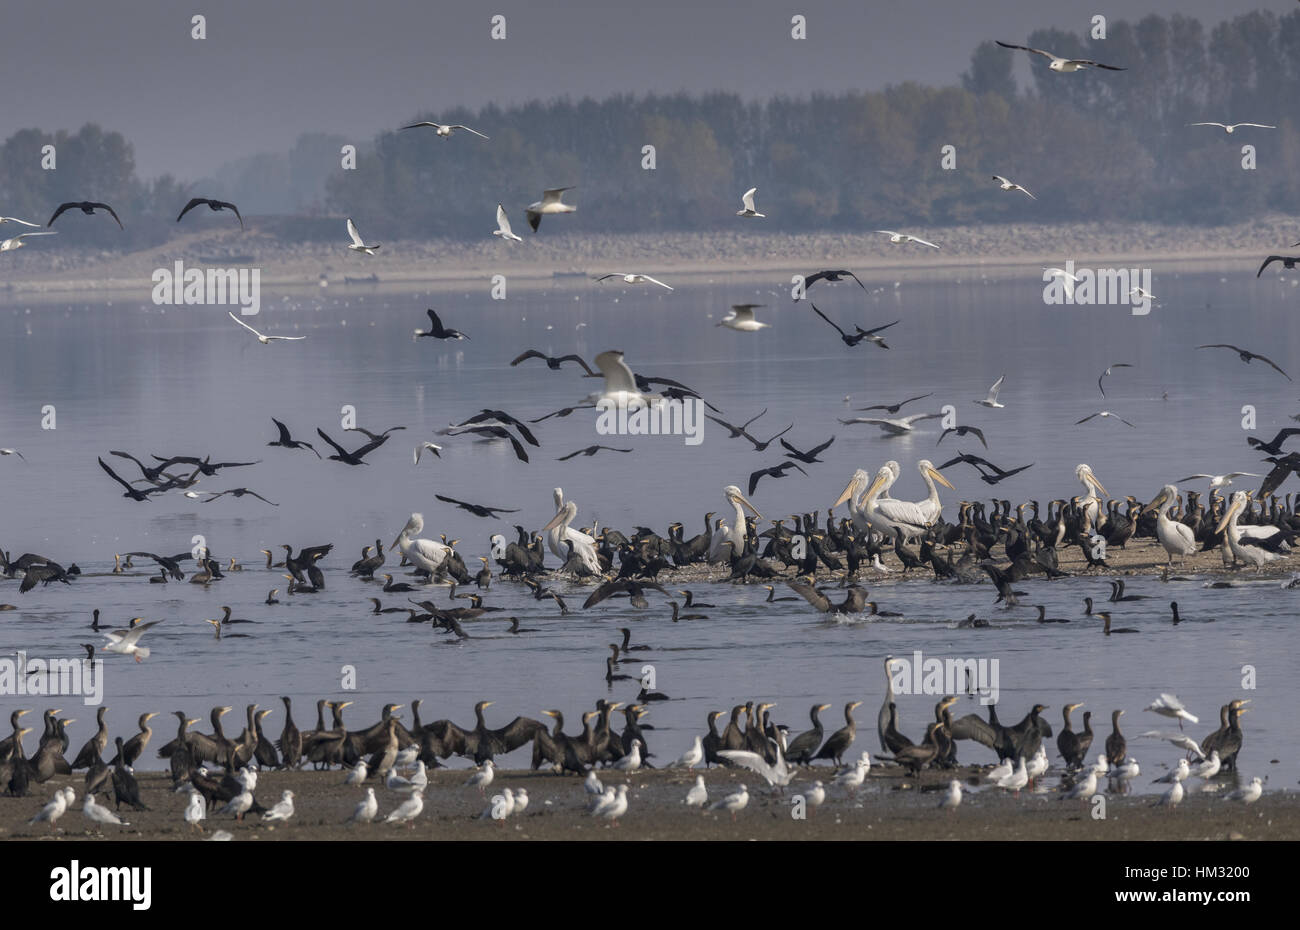 Grande pellicani bianchi, cormorani in comune e a testa nera gabbiano sono ' appollaiati e alimentazione, il lago di Kerkini, Grecia. Foto Stock